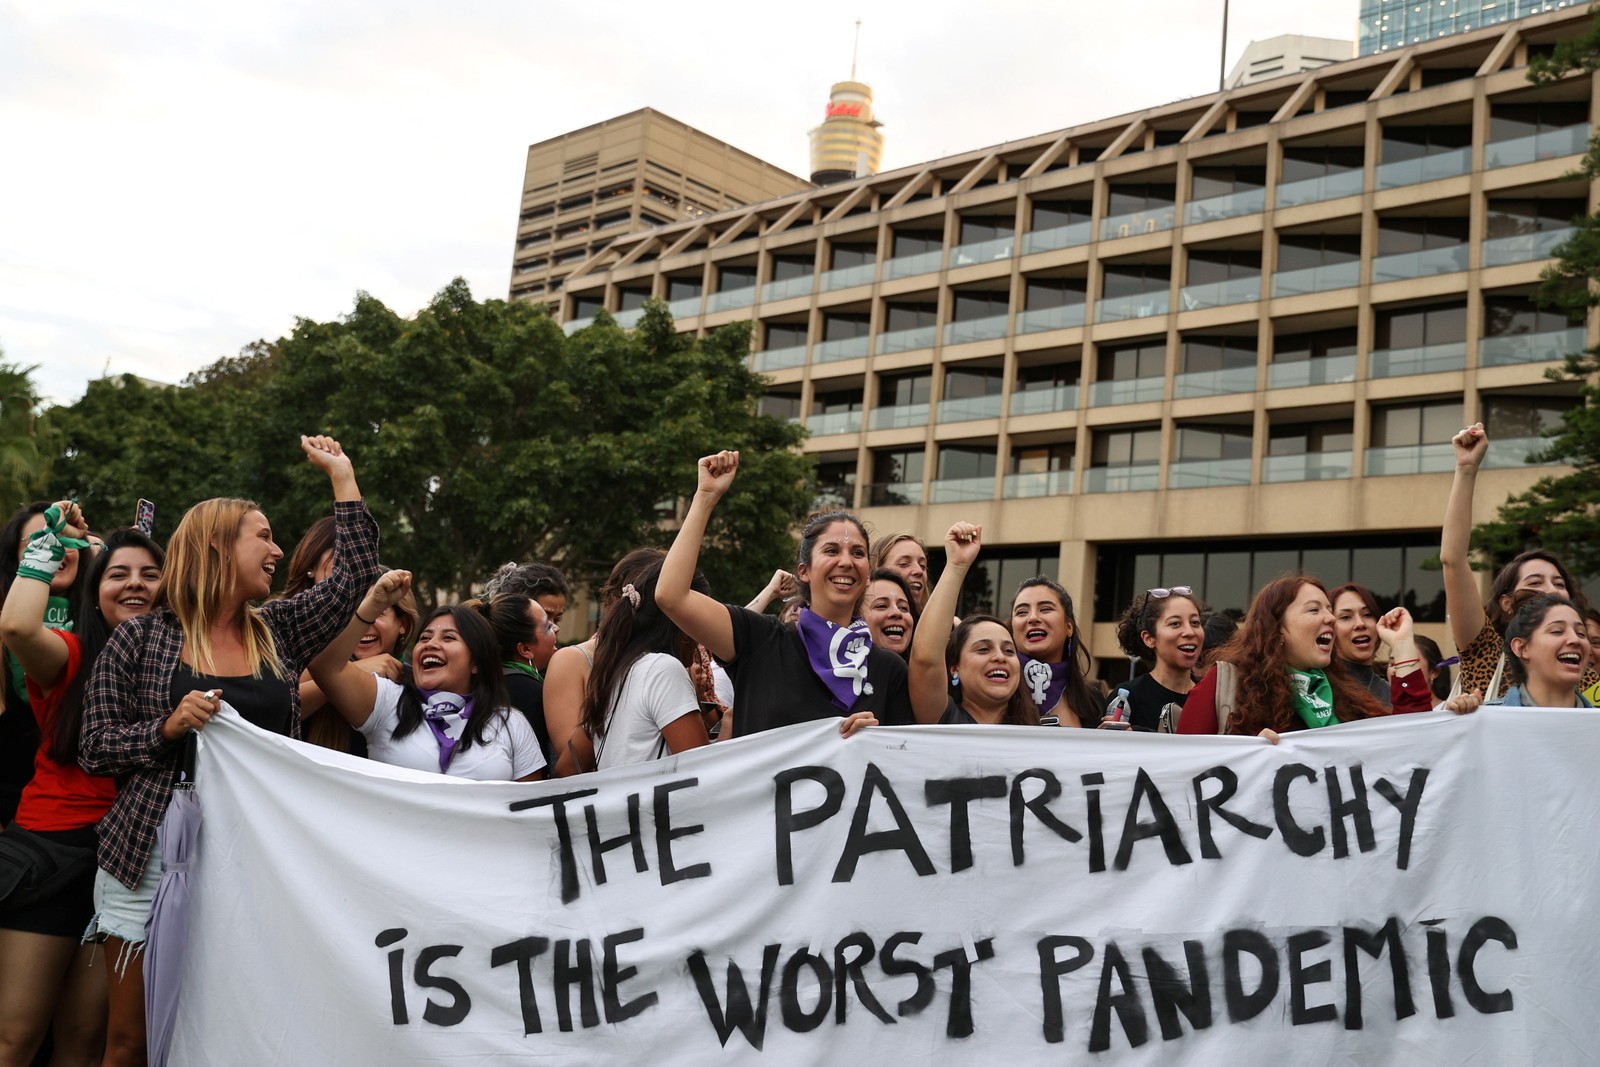 "O patriarcado é a pior pandemia", diz cartaz de mulheres que protestam em Sydney, AustráliaREUTERS